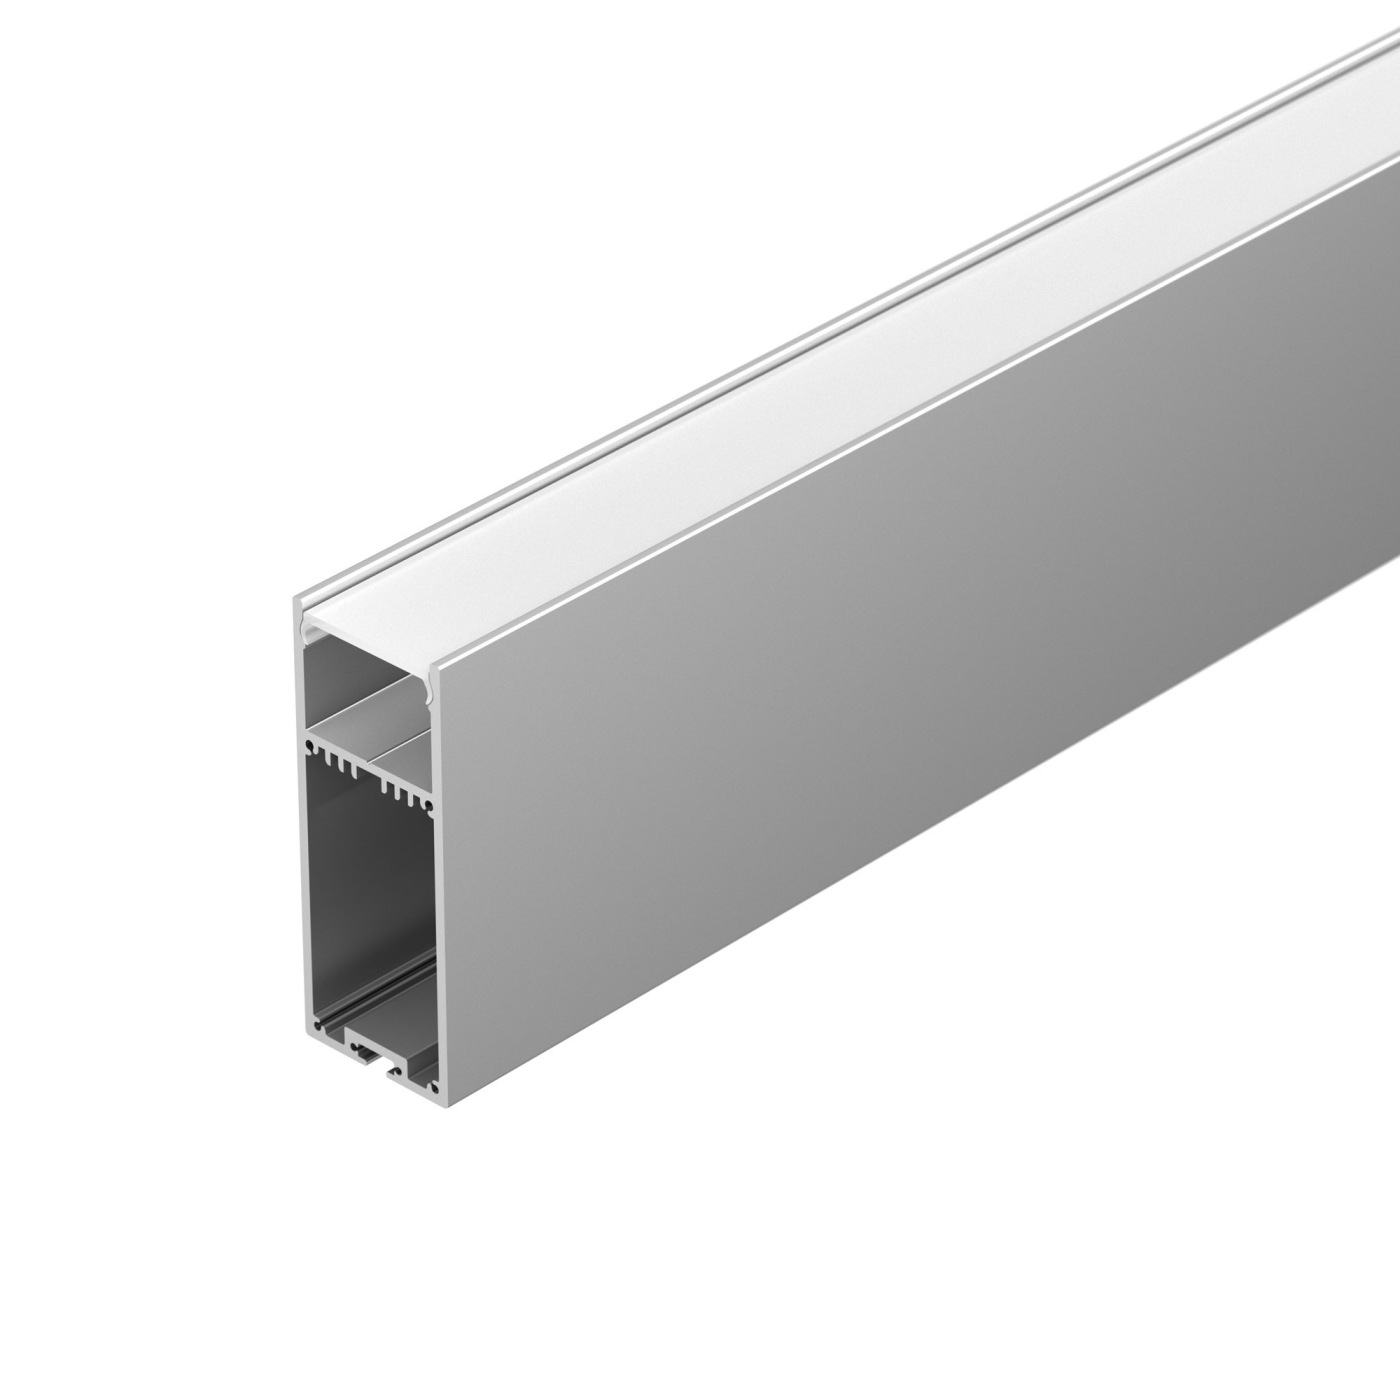 Профиль SL-LINE-3691-2000 ANOD профиль алюминиевый накладной подвесной с отсеком для бп серебро cab266